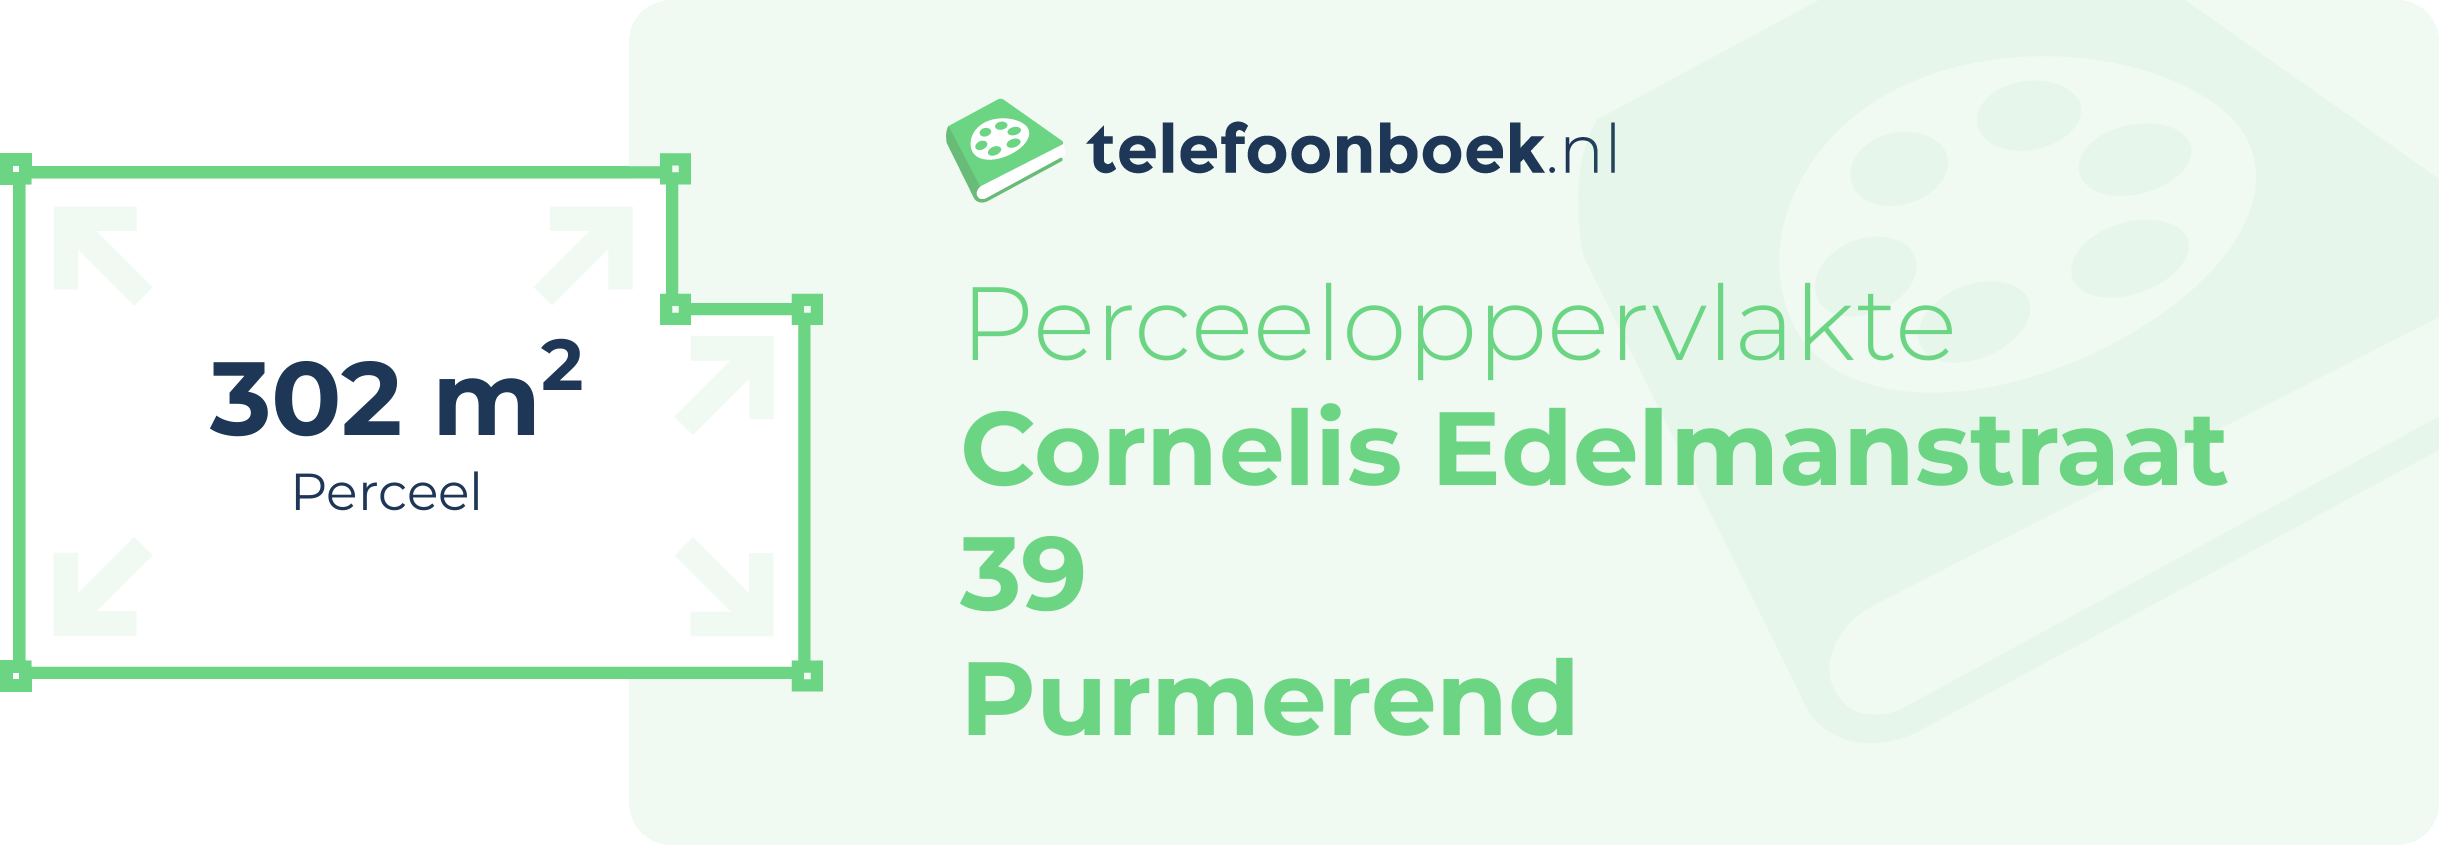 Perceeloppervlakte Cornelis Edelmanstraat 39 Purmerend